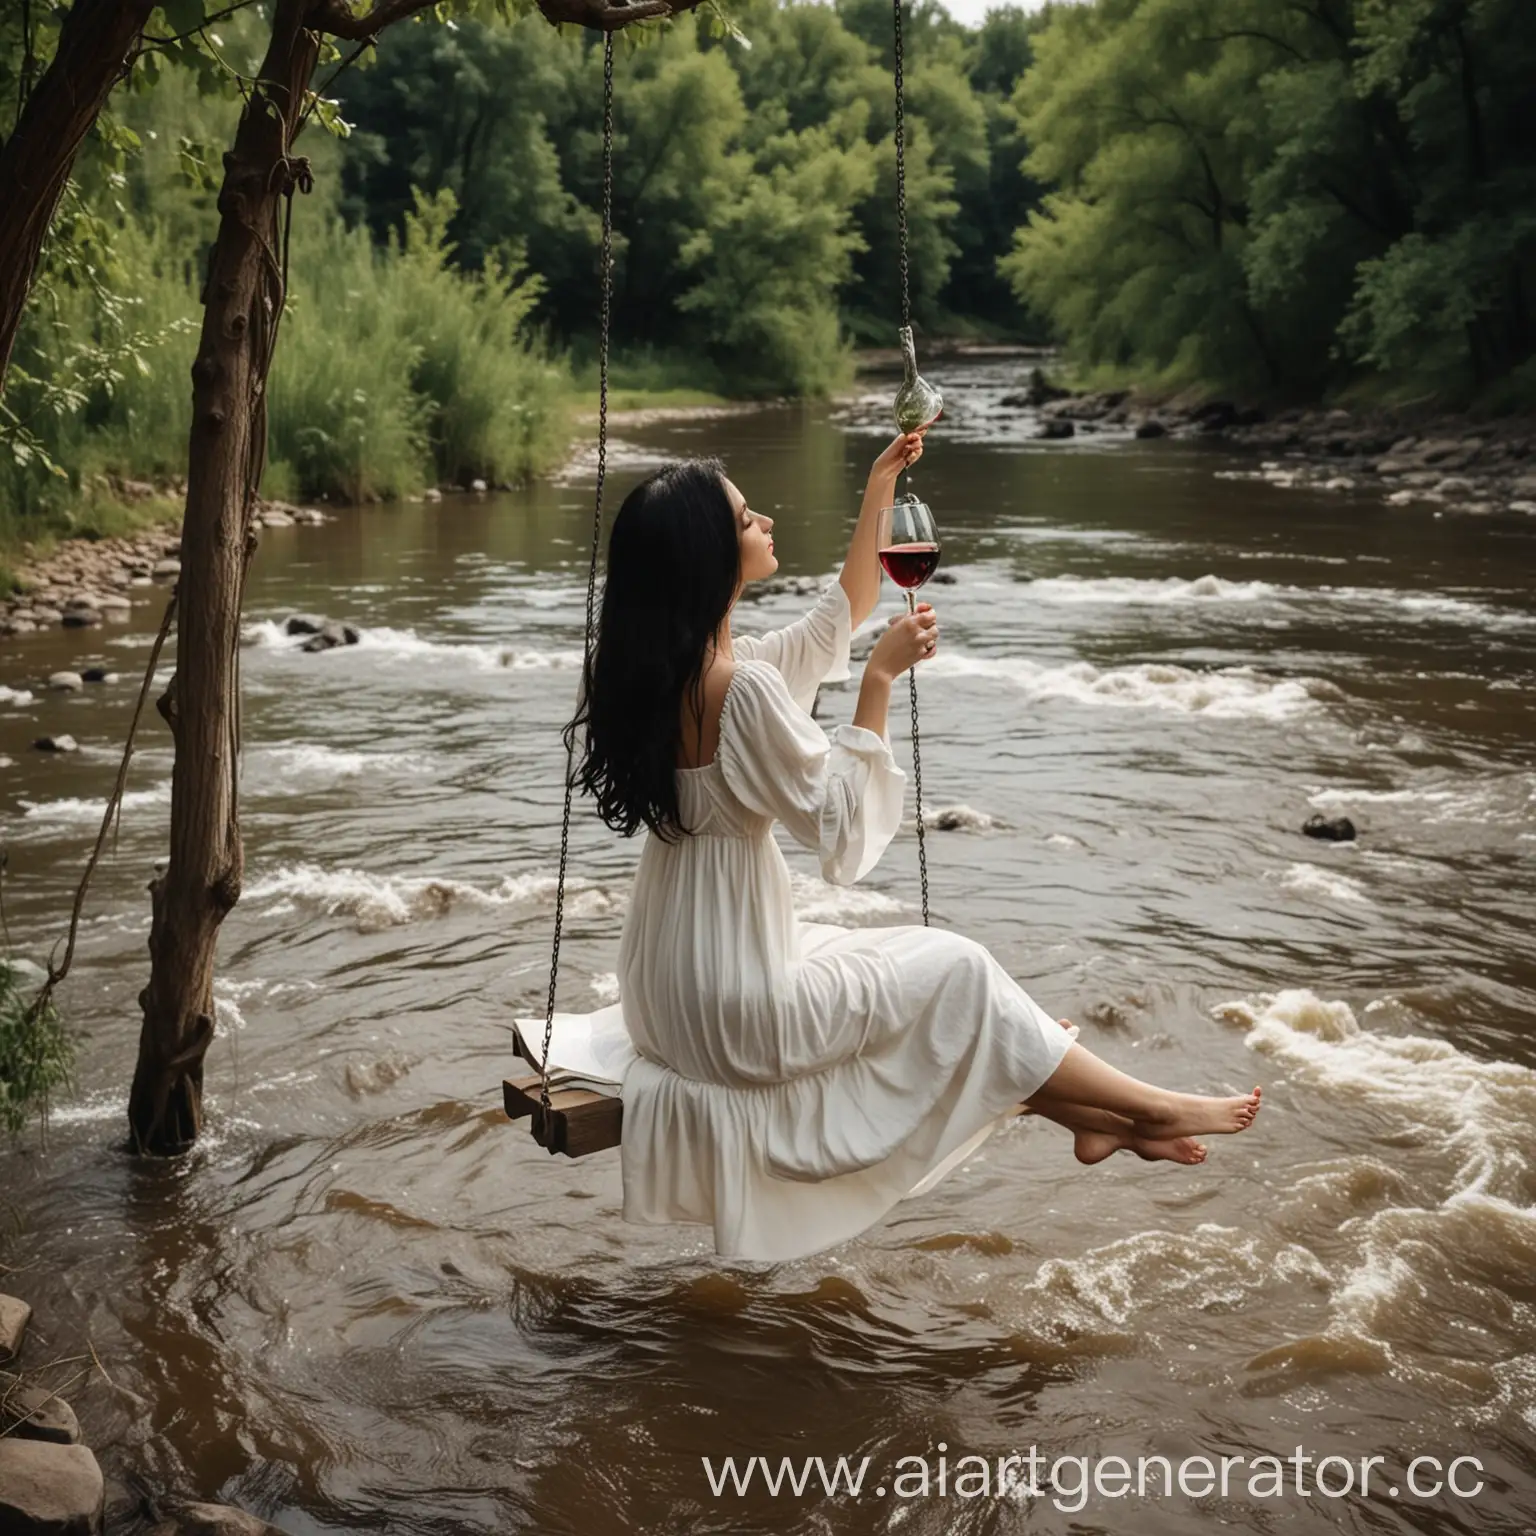 утогченная стройная девушка с длинными черными волосами красивой фигурой в длинном белом платье  качается на качеле на берегу бурной реки читает книгу и пьет вино